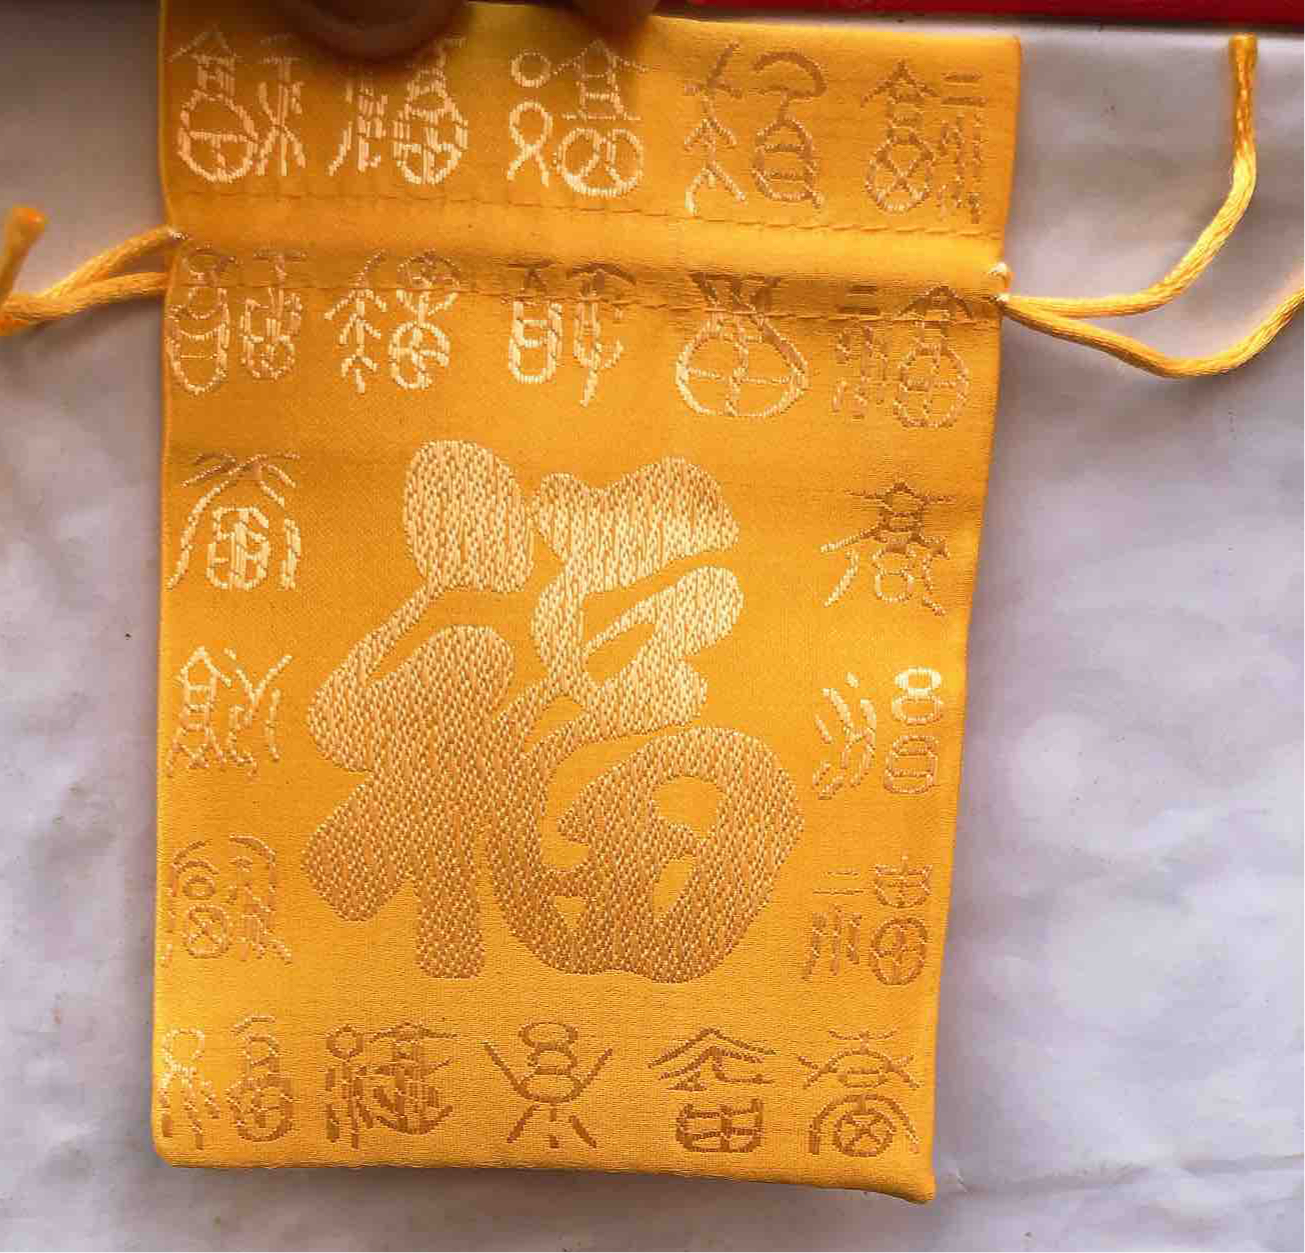 ตรุษจีน ถุงผ้าของขวัญลายฮกสีทอง(ถุงรูด) ขนาดความกว้าง9CM ยาว 13CM ถุงของขวัญ ใส่ทอง ใส่แหวน ใส่เหรียญได้